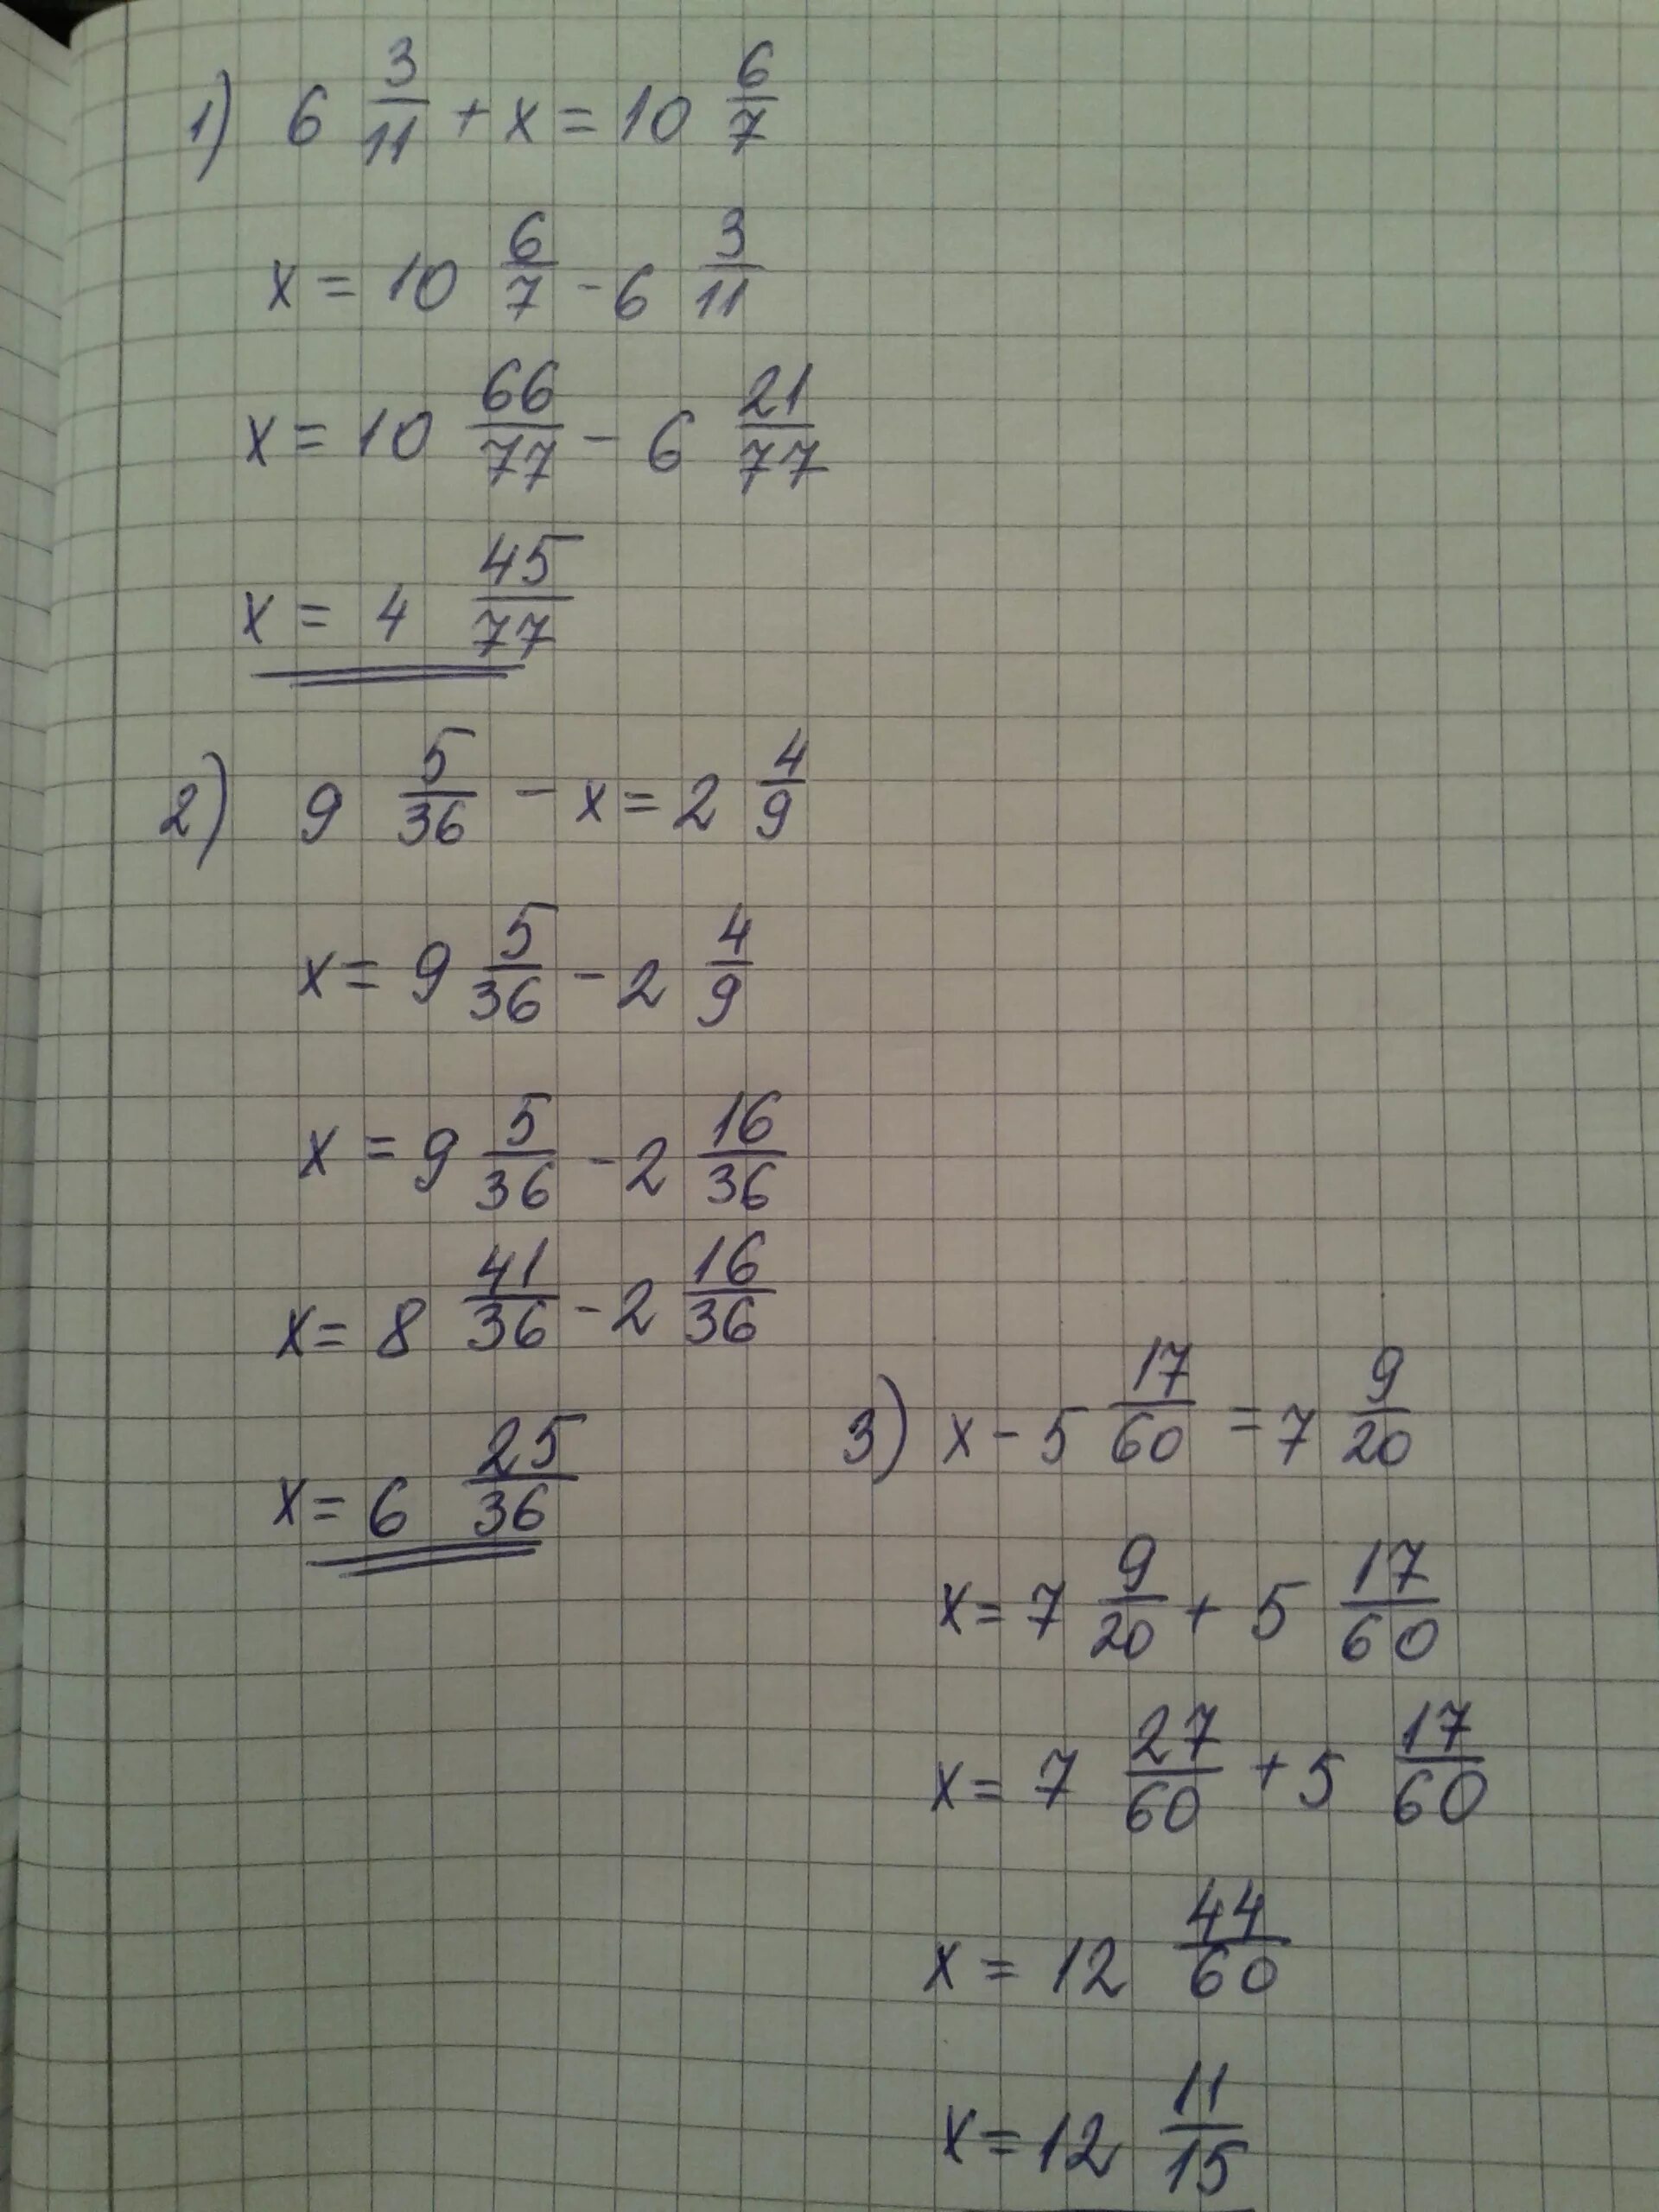 3x 36 x 9. Х2-11х/6+1/2. Х-3 7/9=5 1/6. 7-2х=9-3х 11х=6+5(2х-1). (Х-1):2-(У-1):6=5/3.